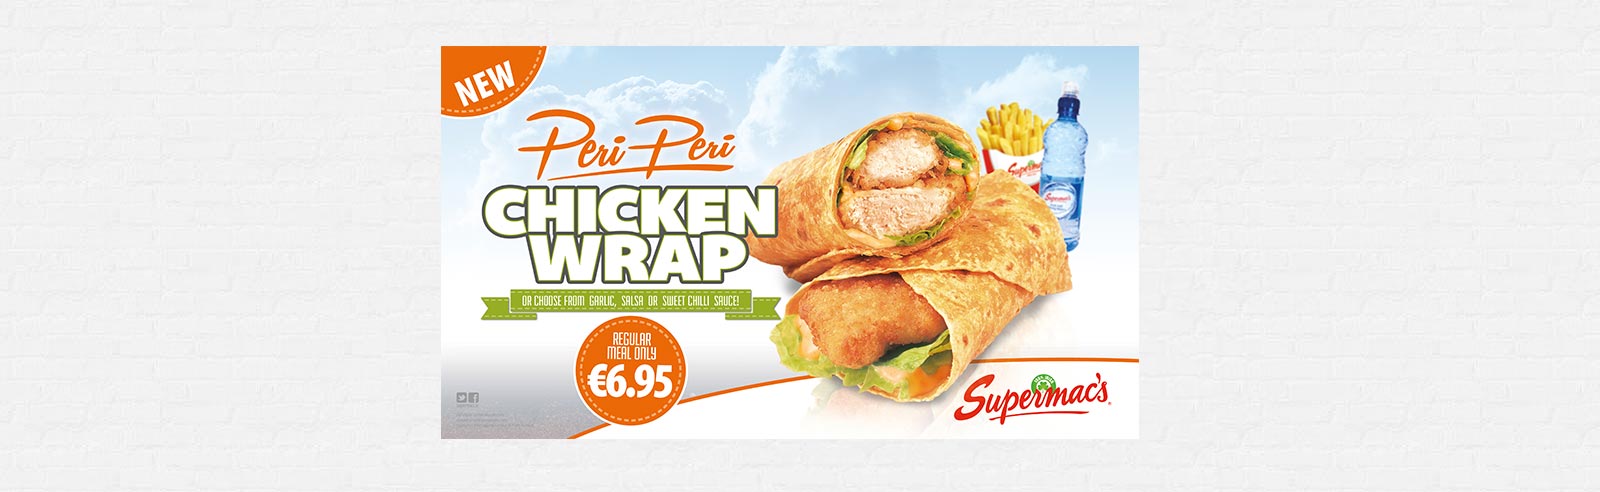 NEW Peri Peri Chicken Wrap